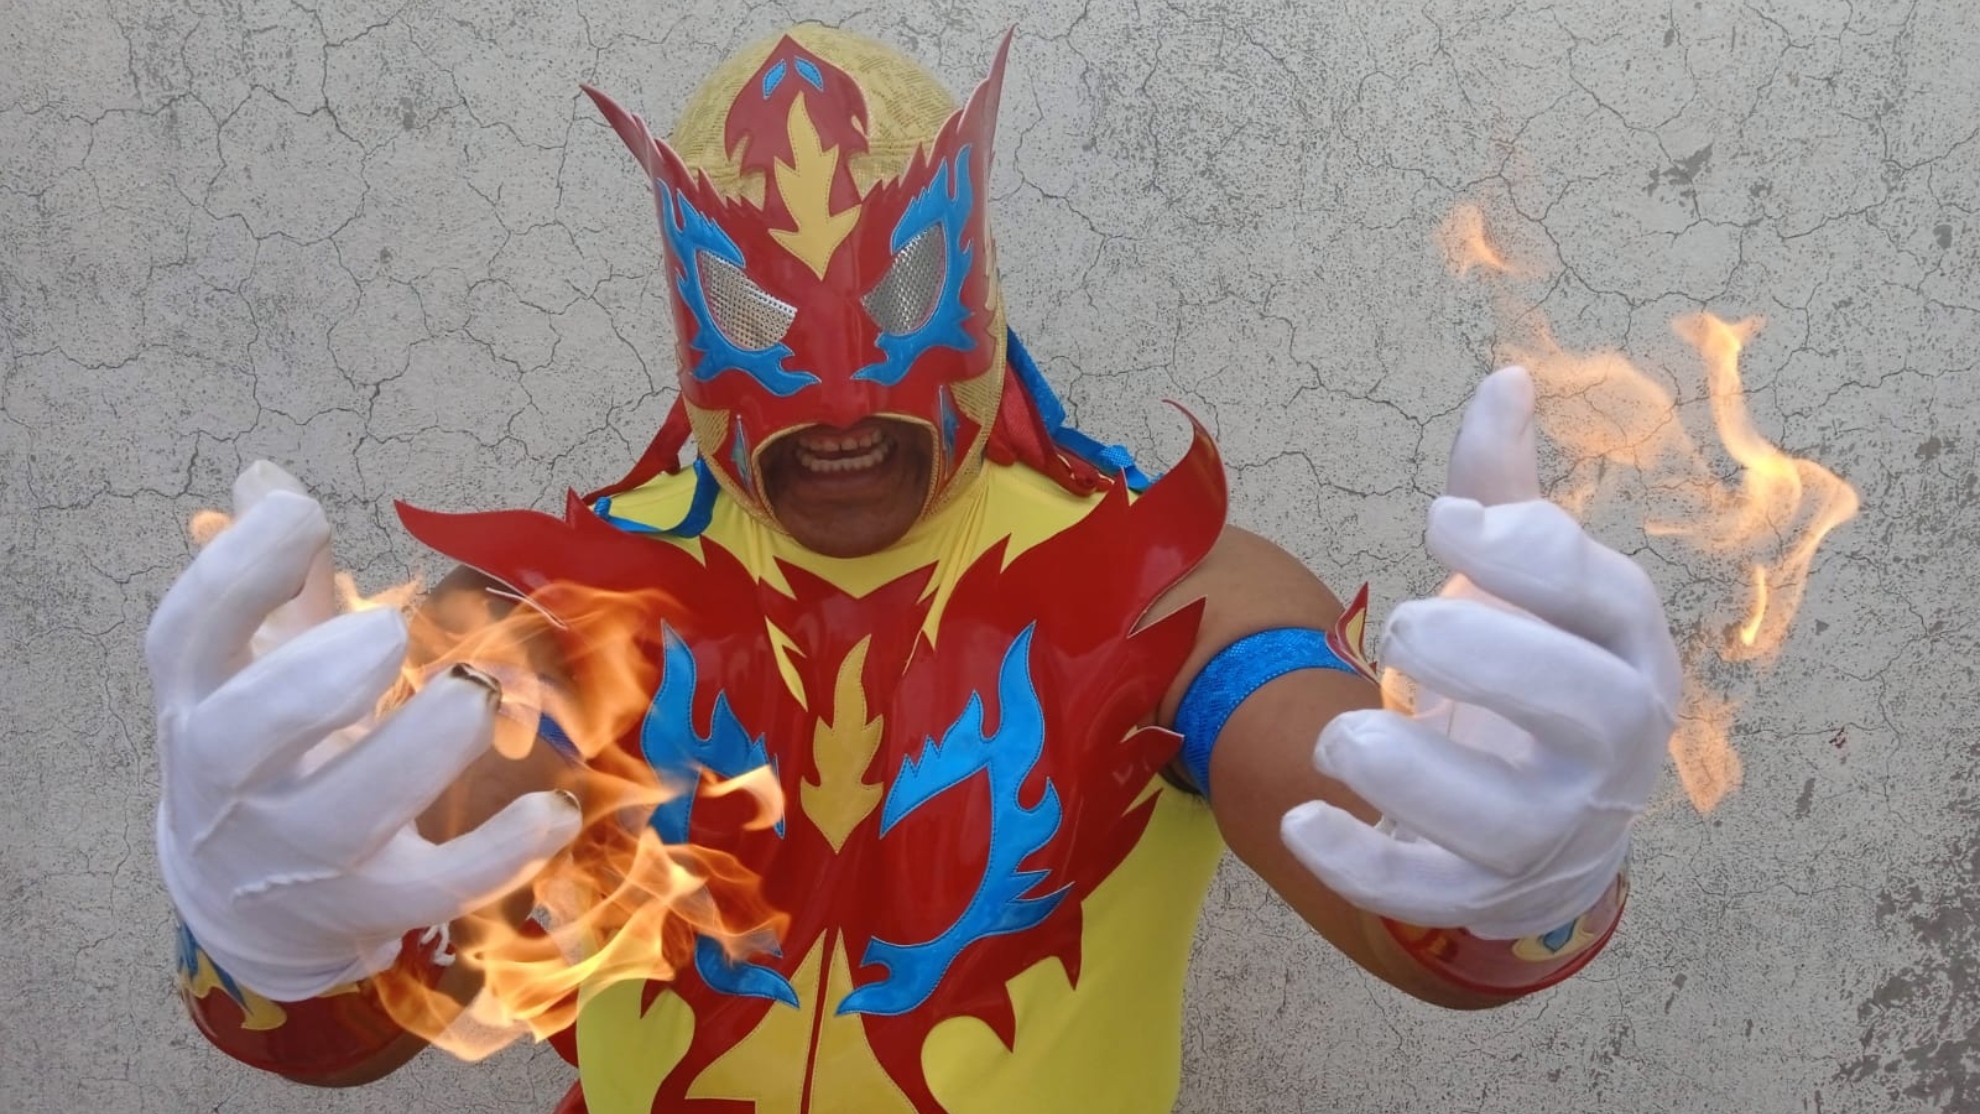 fire jr. quiere mostrar sus cualidades en el ring sagrado de la arena mexico